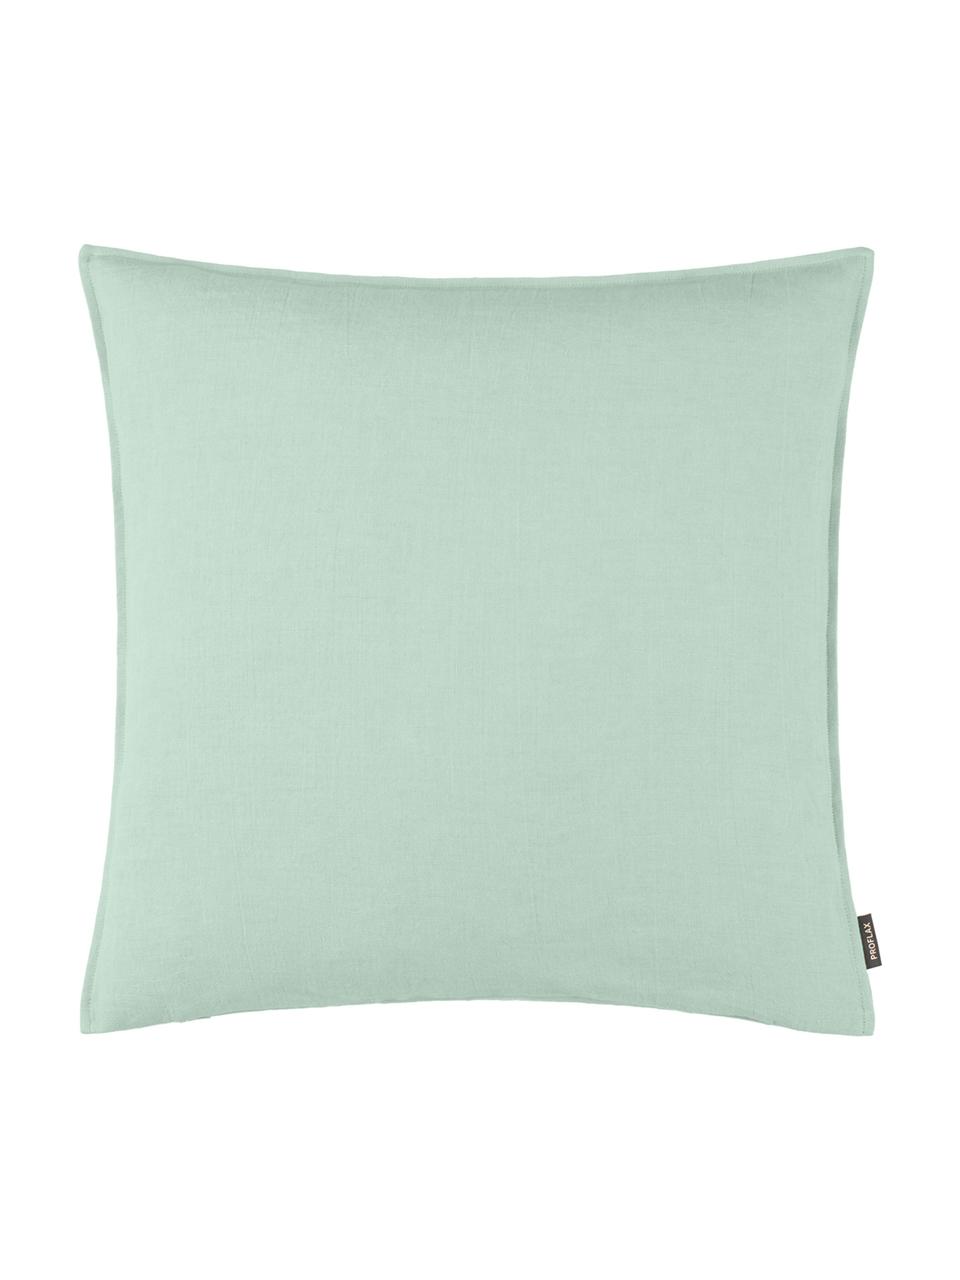 Poszewka na poduszkę z lnu Sven, Len, Zielony miętowy, S 40 x D 40 cm